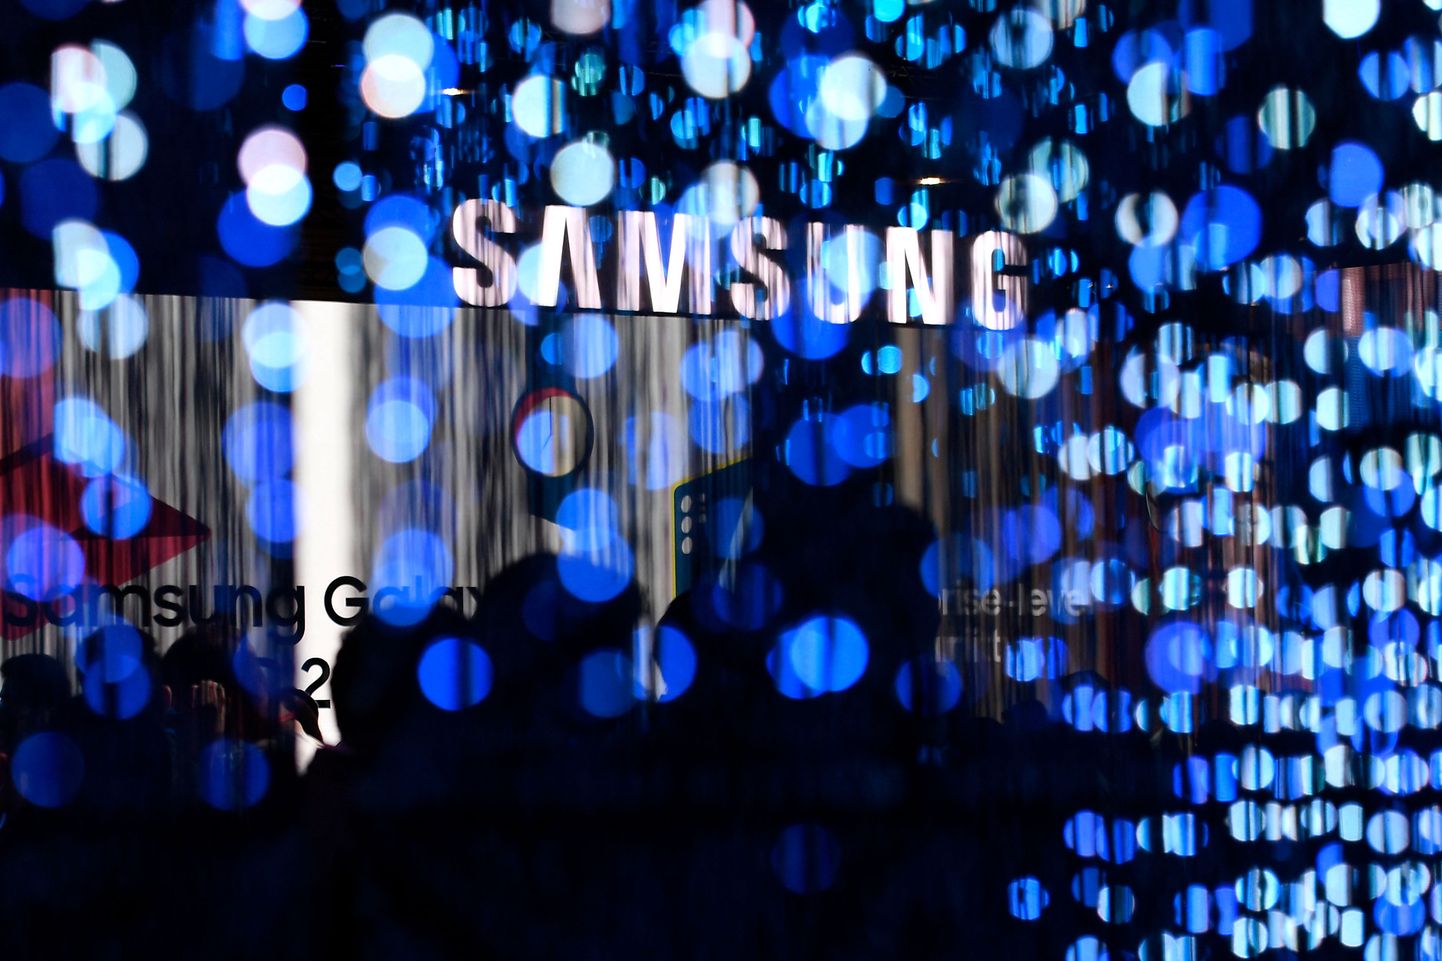 Samsungi koodi näppamine on grupi Lapsus$ juba teine suur rünne tuntud tehnoloogiafirma vastu viimaste päevade jooksul.